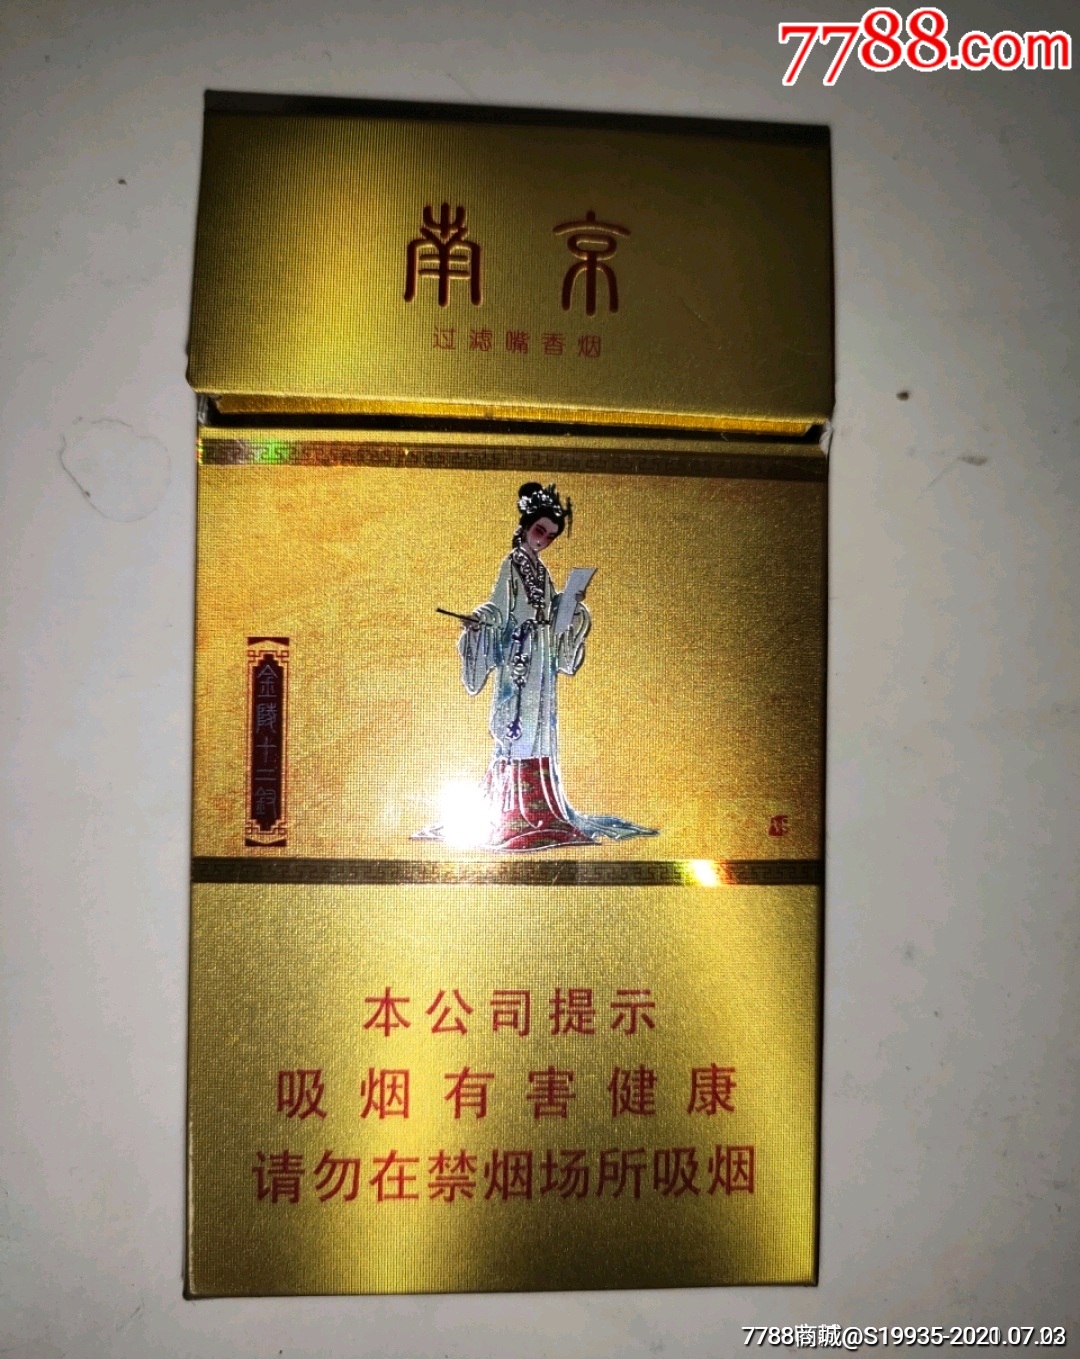 100元一盒的烟南京图片